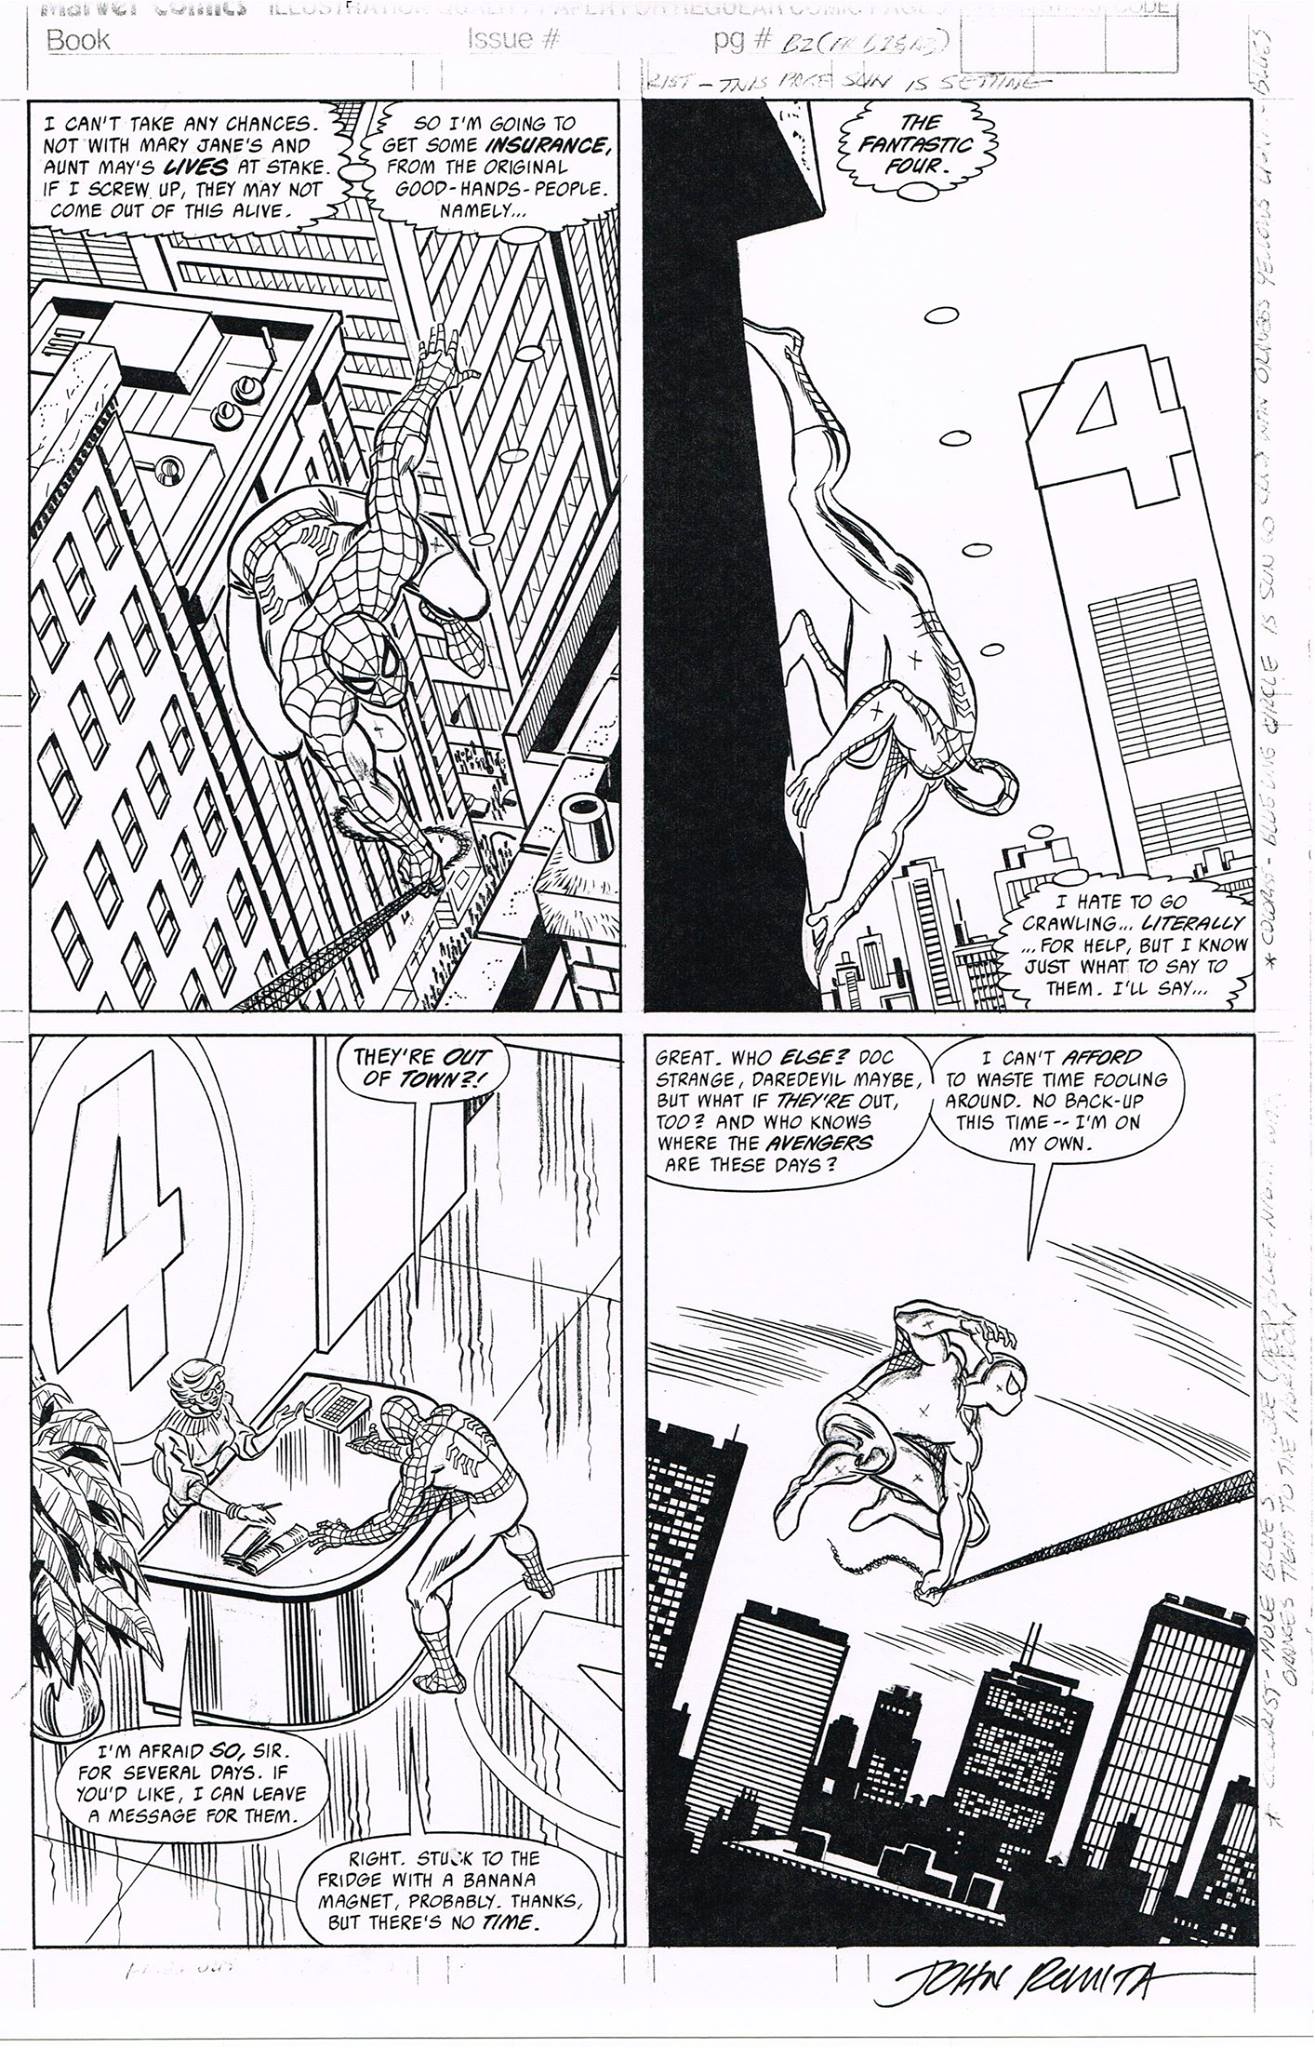 کمیک منتشر نشده مرد عنکبوتی صفحه 3